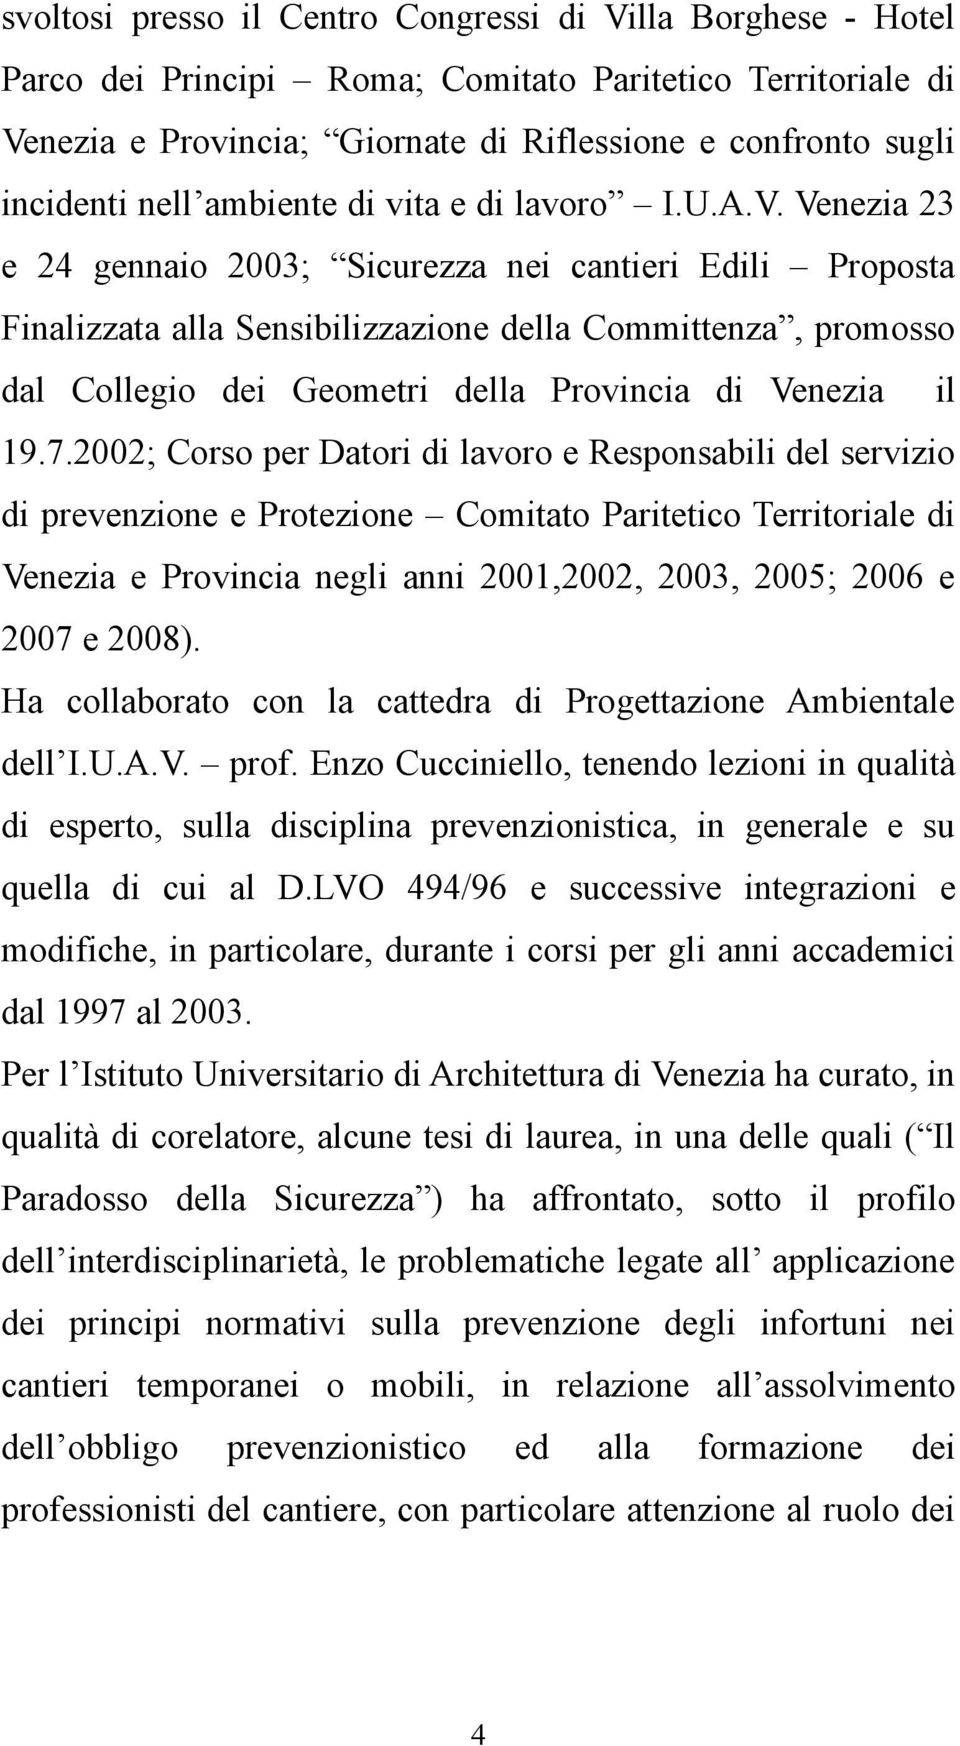 Venezia 23 e 24 gennaio 2003; Sicurezza nei cantieri Edili Proposta Finalizzata alla Sensibilizzazione della Committenza, promosso dal Collegio dei Geometri della Provincia di Venezia il 19.7.